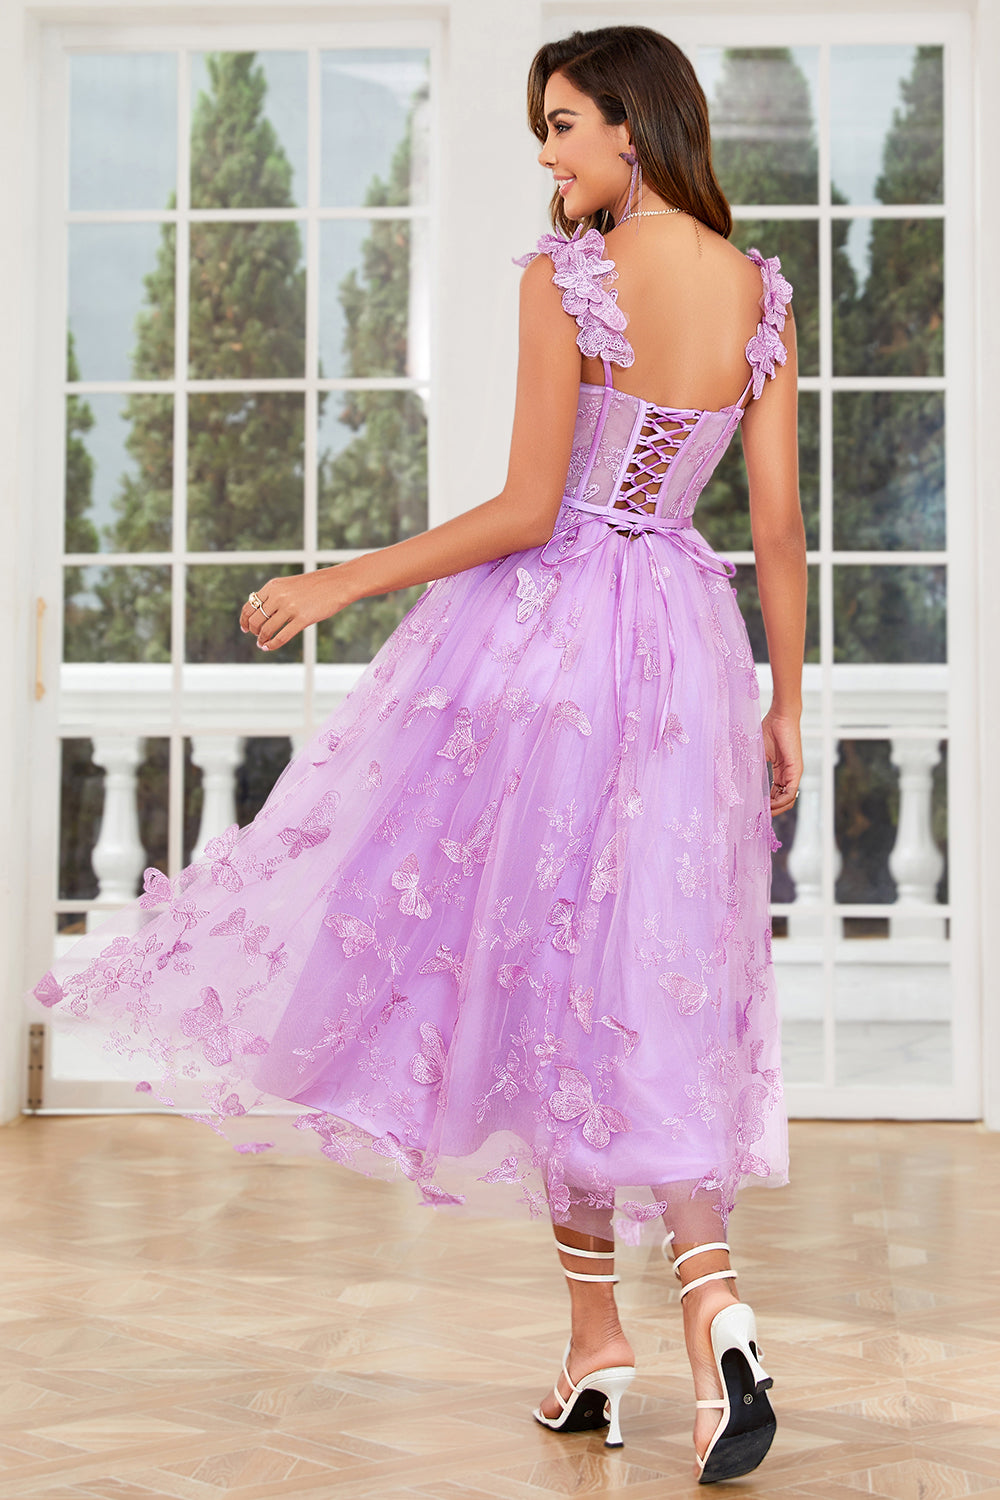 Unique A Line Purple Corset Prom Dress with Butterflies Appliques